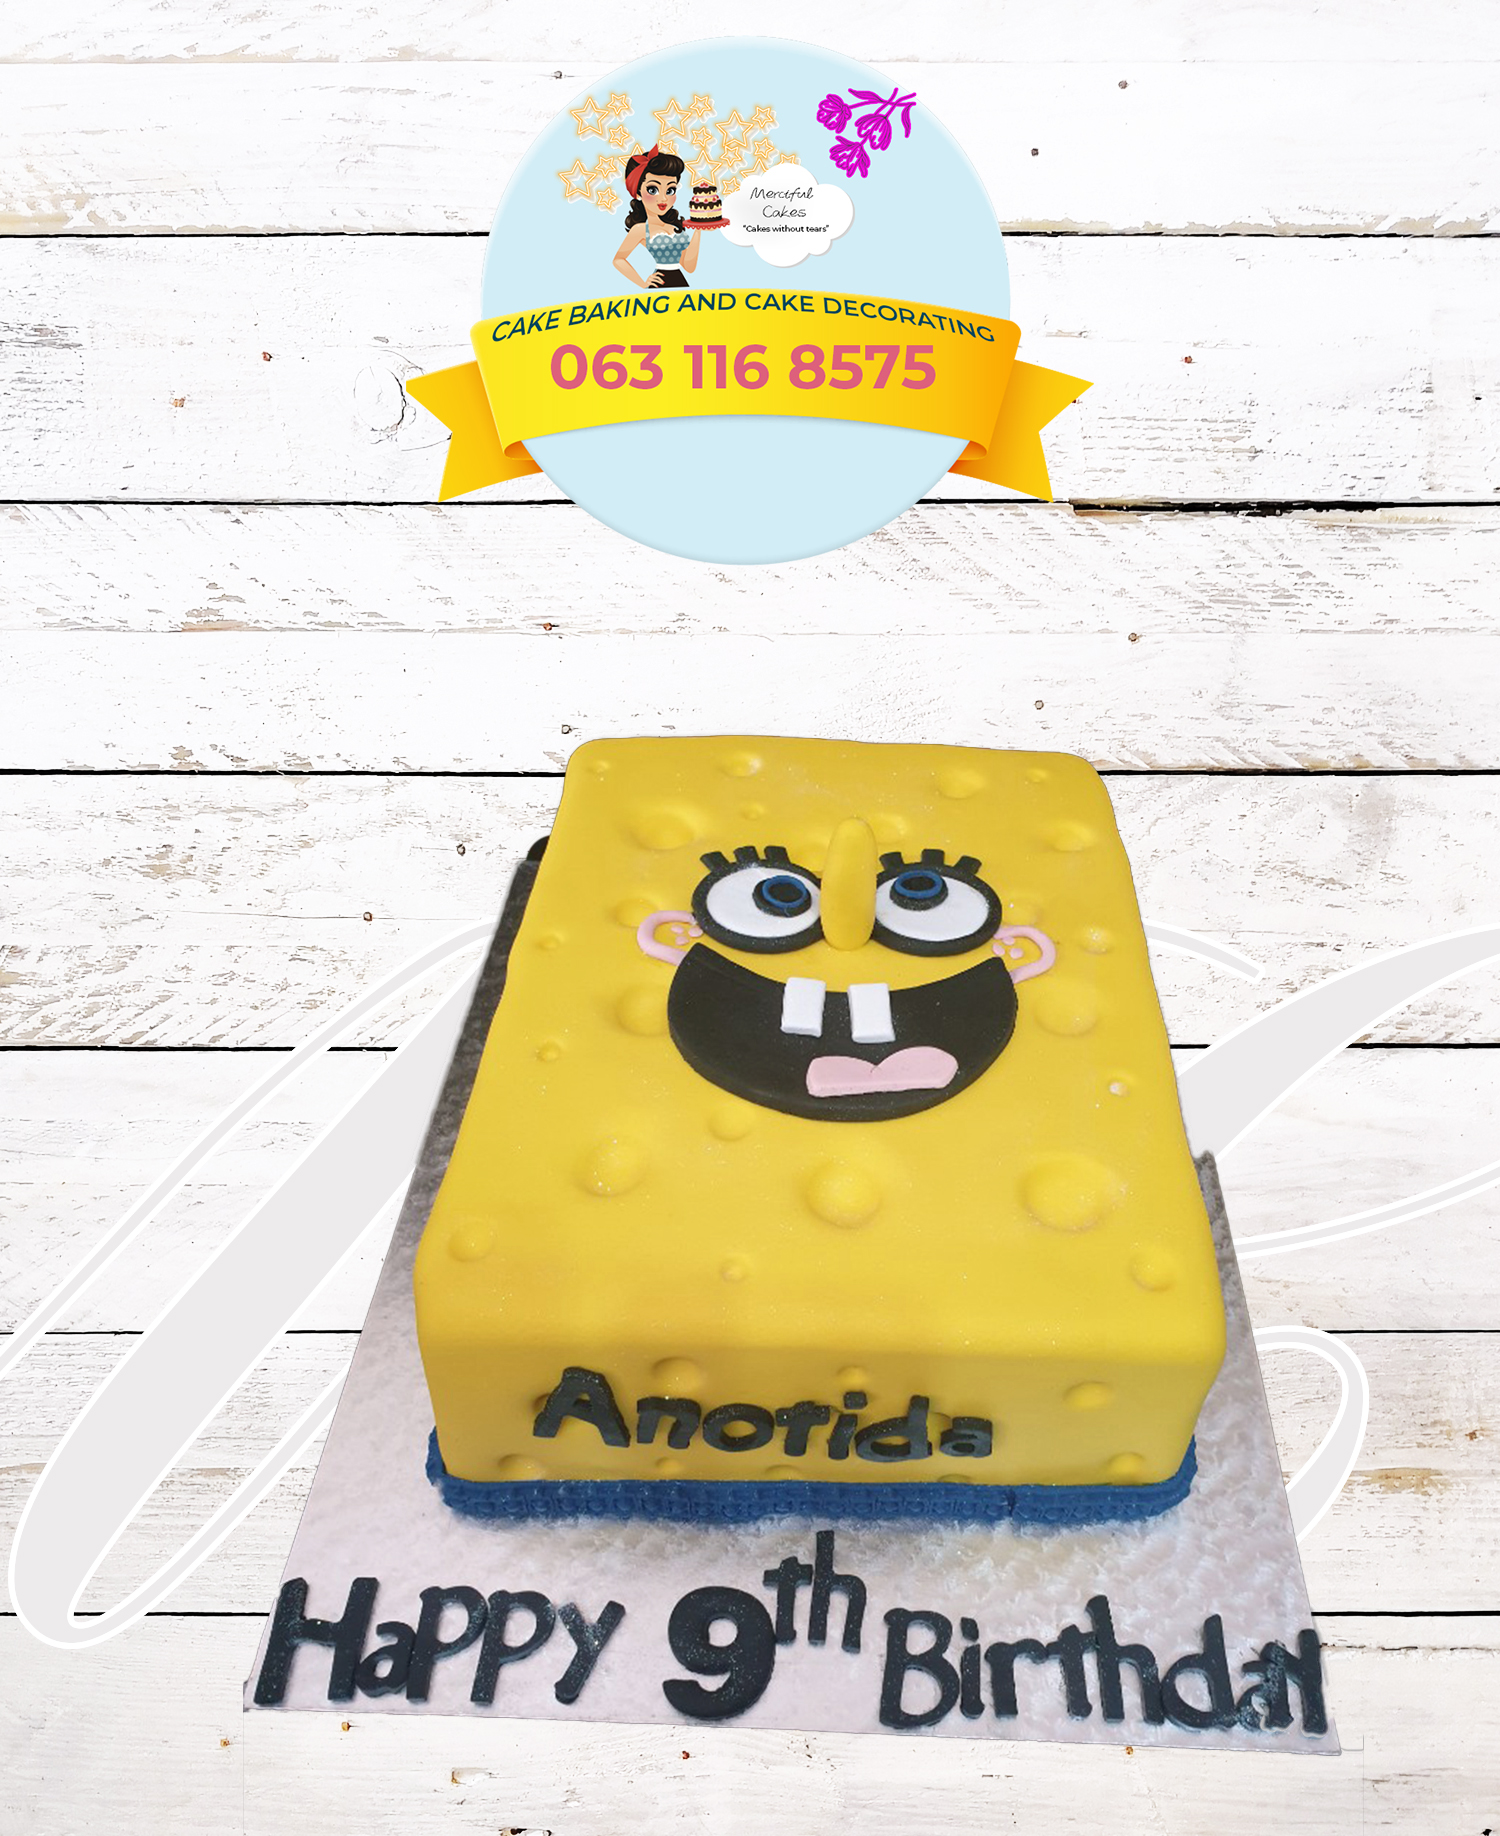 SpongeBob theme cake – casebakes cookies